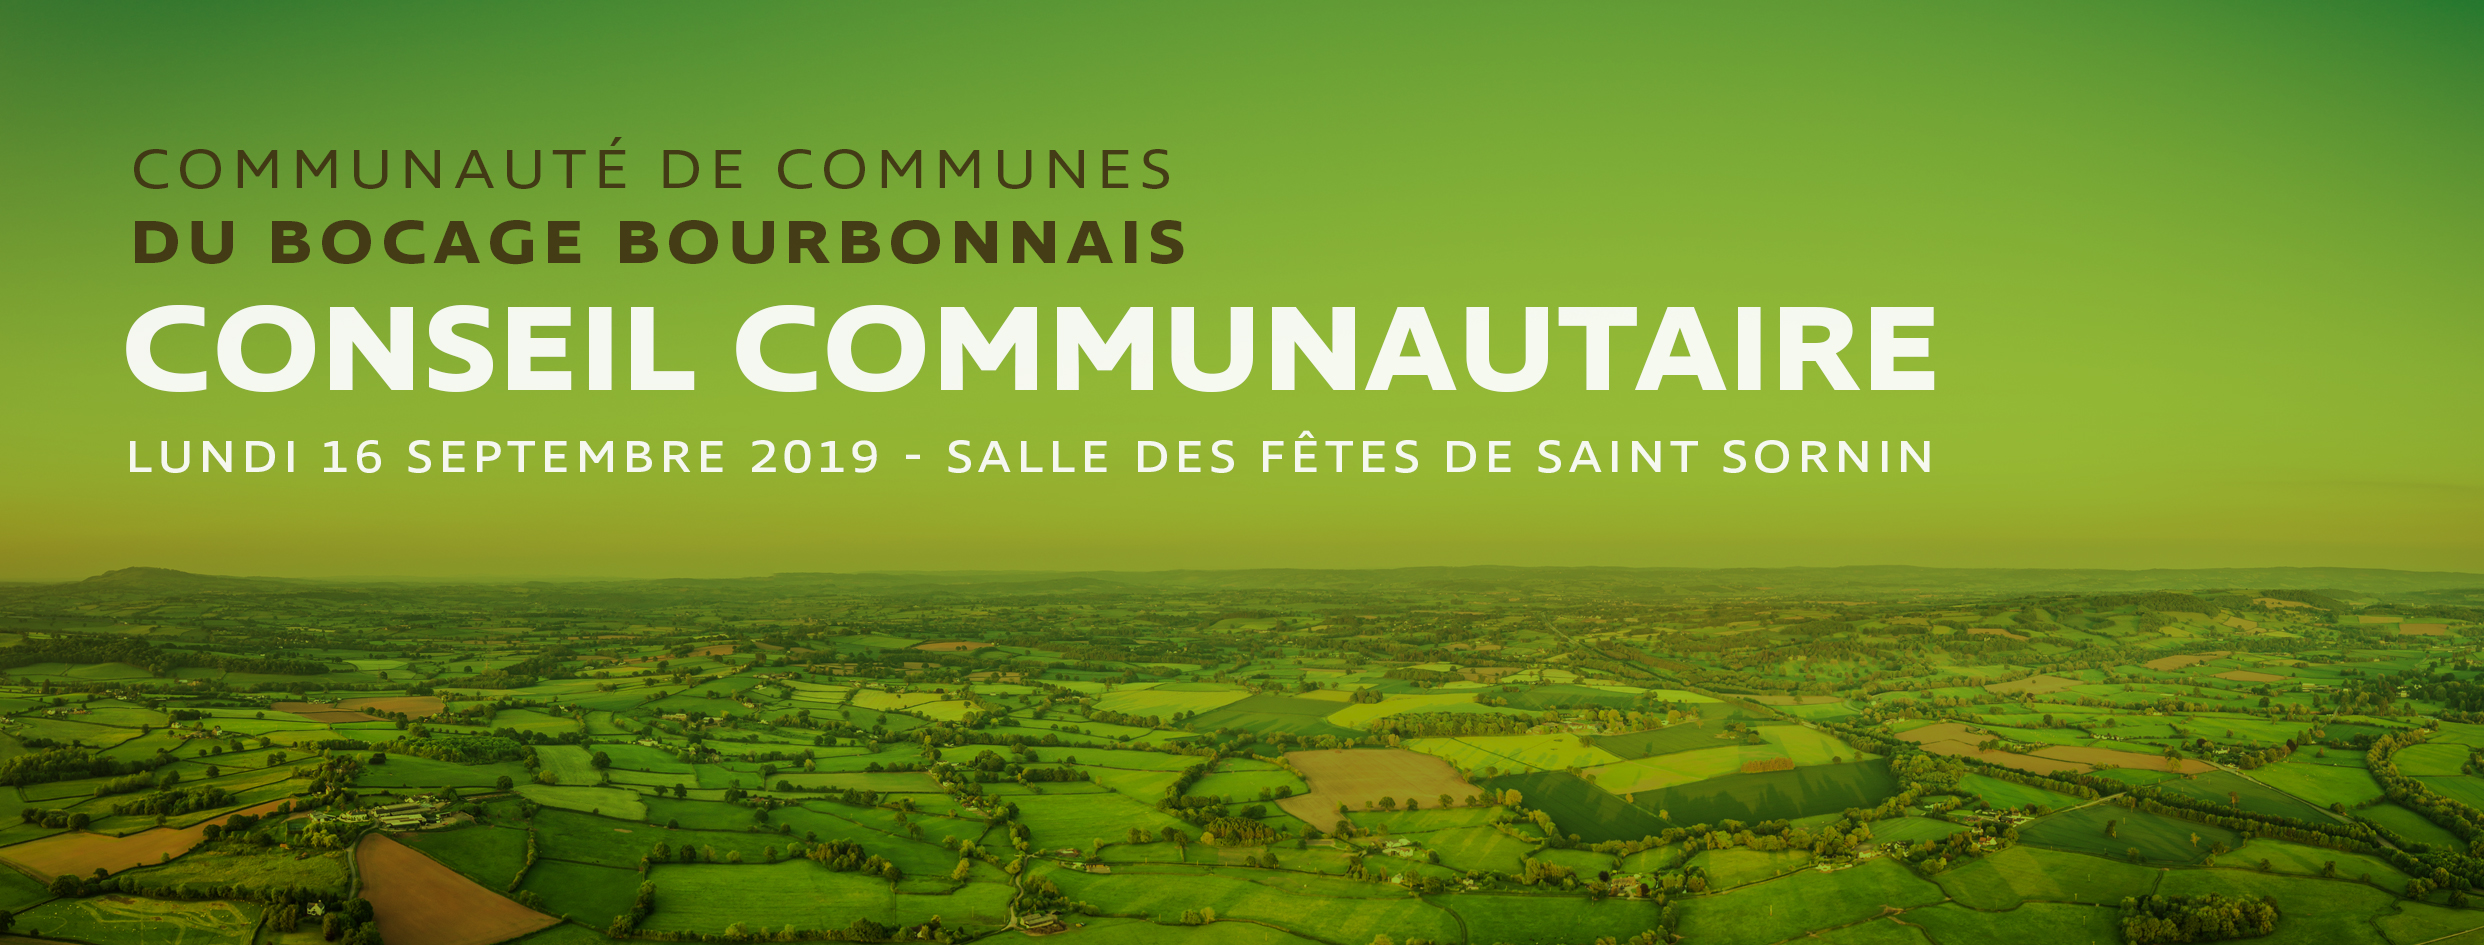 Les RDV en Bocage : Conseil Communautaire du Bocage Bourbonnais à Saint Sornin